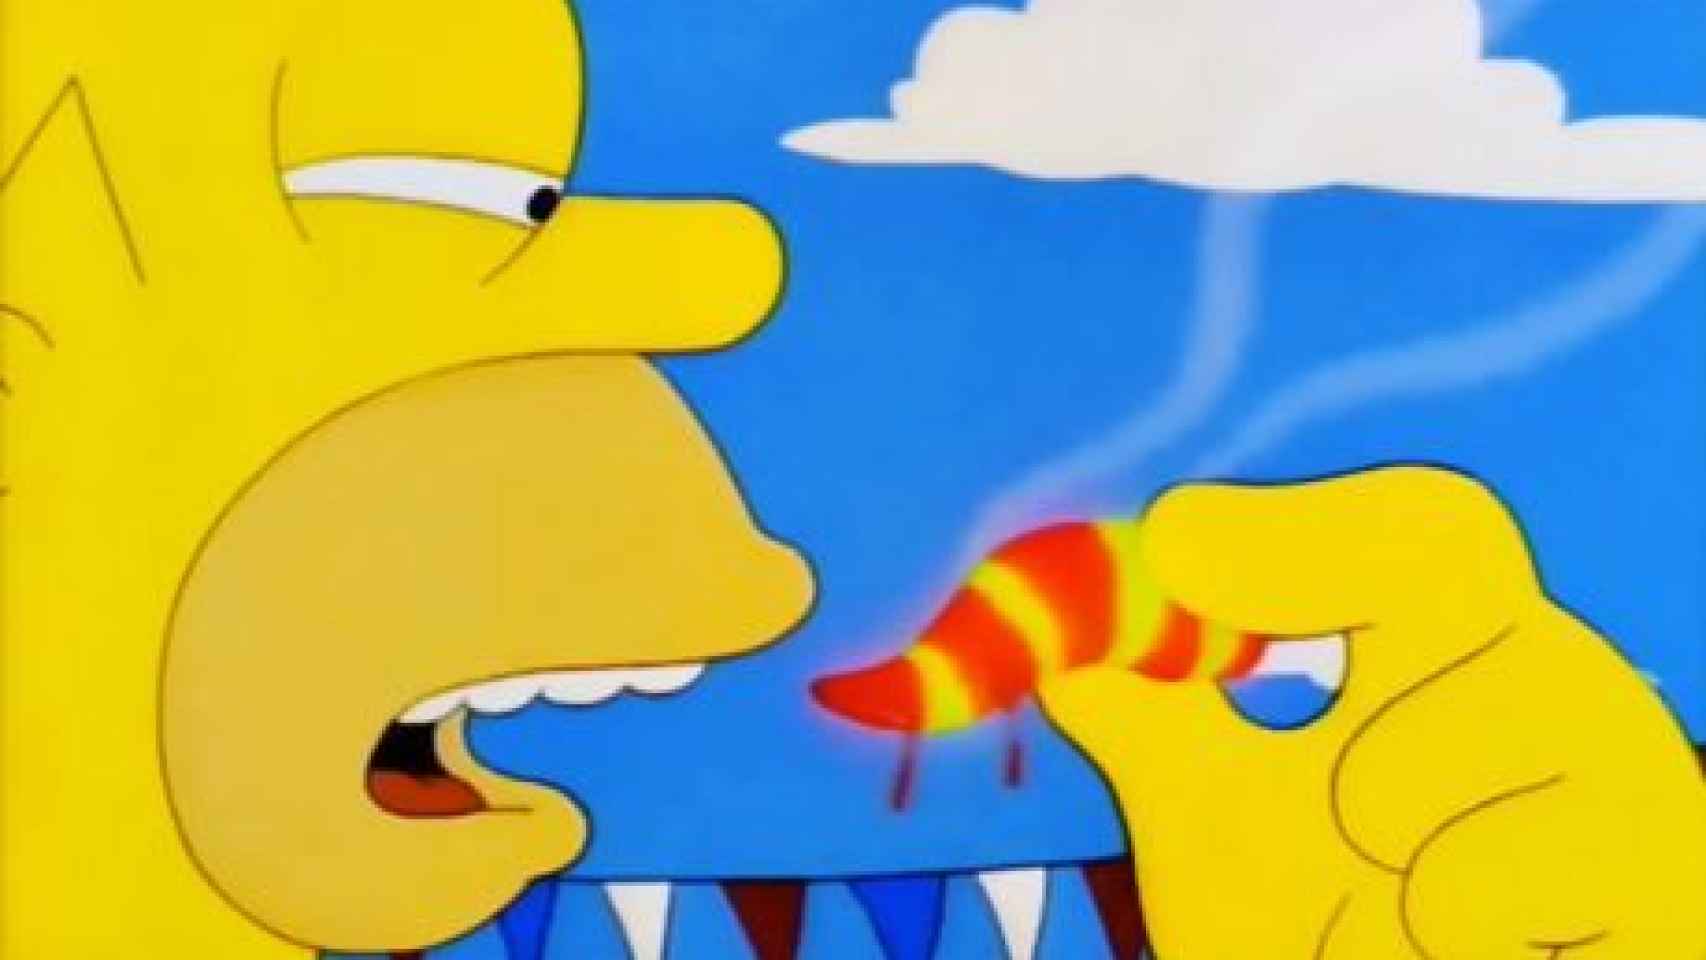 El bueno de Homer Simpson siempre supo lo que se hacía.